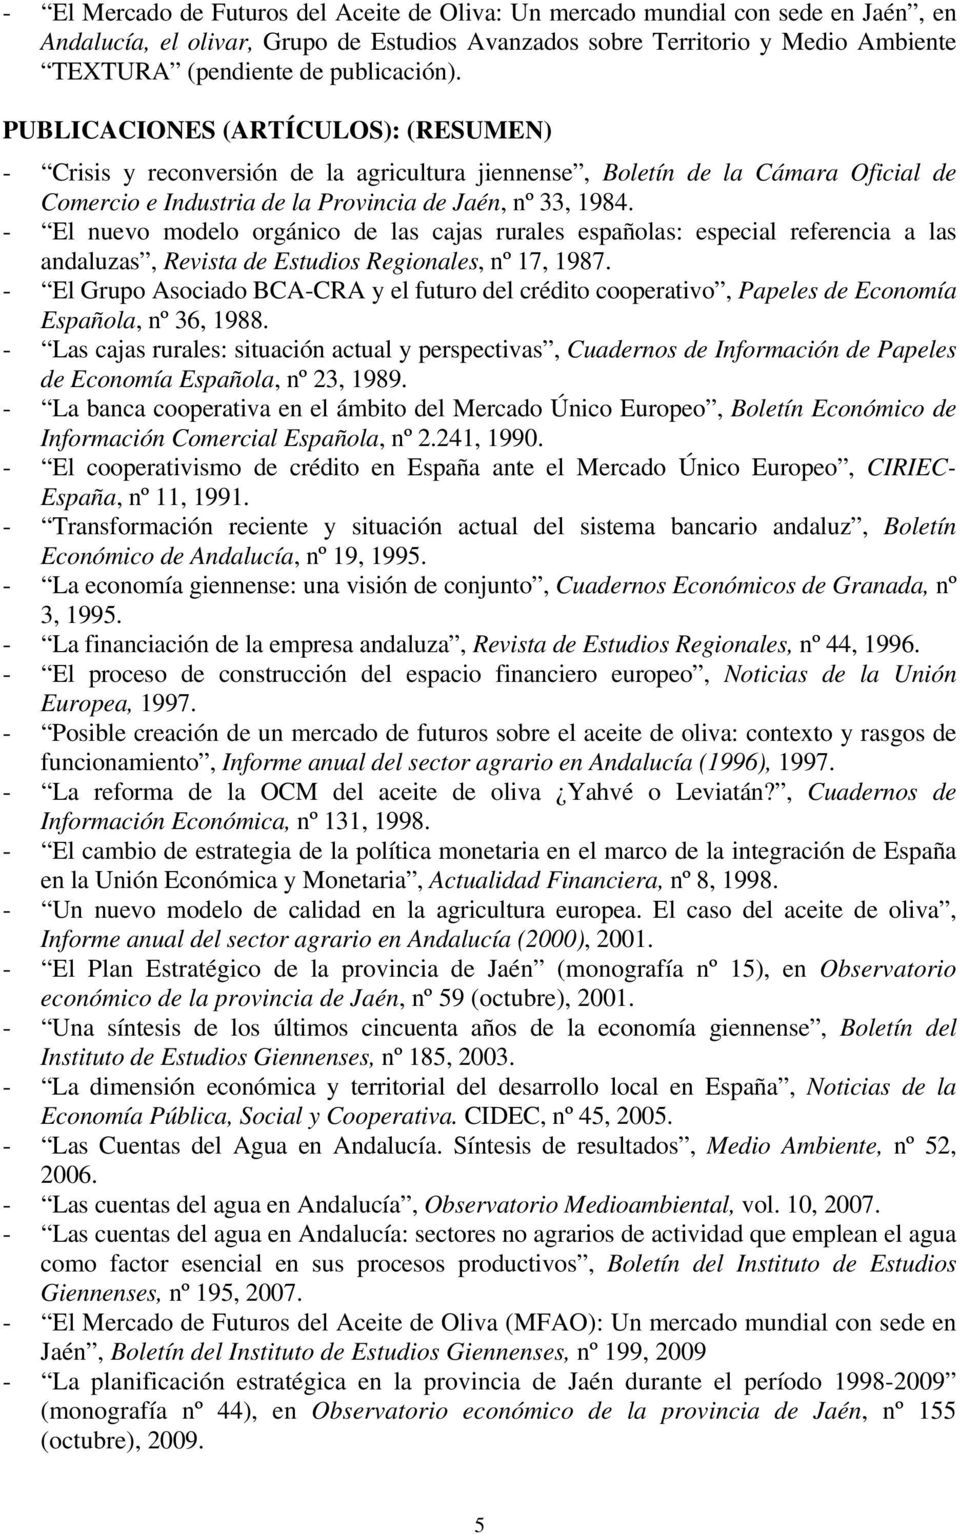 - El nuevo modelo orgánico de las cajas rurales españolas: especial referencia a las andaluzas, Revista de Estudios Regionales, nº 17, 1987.